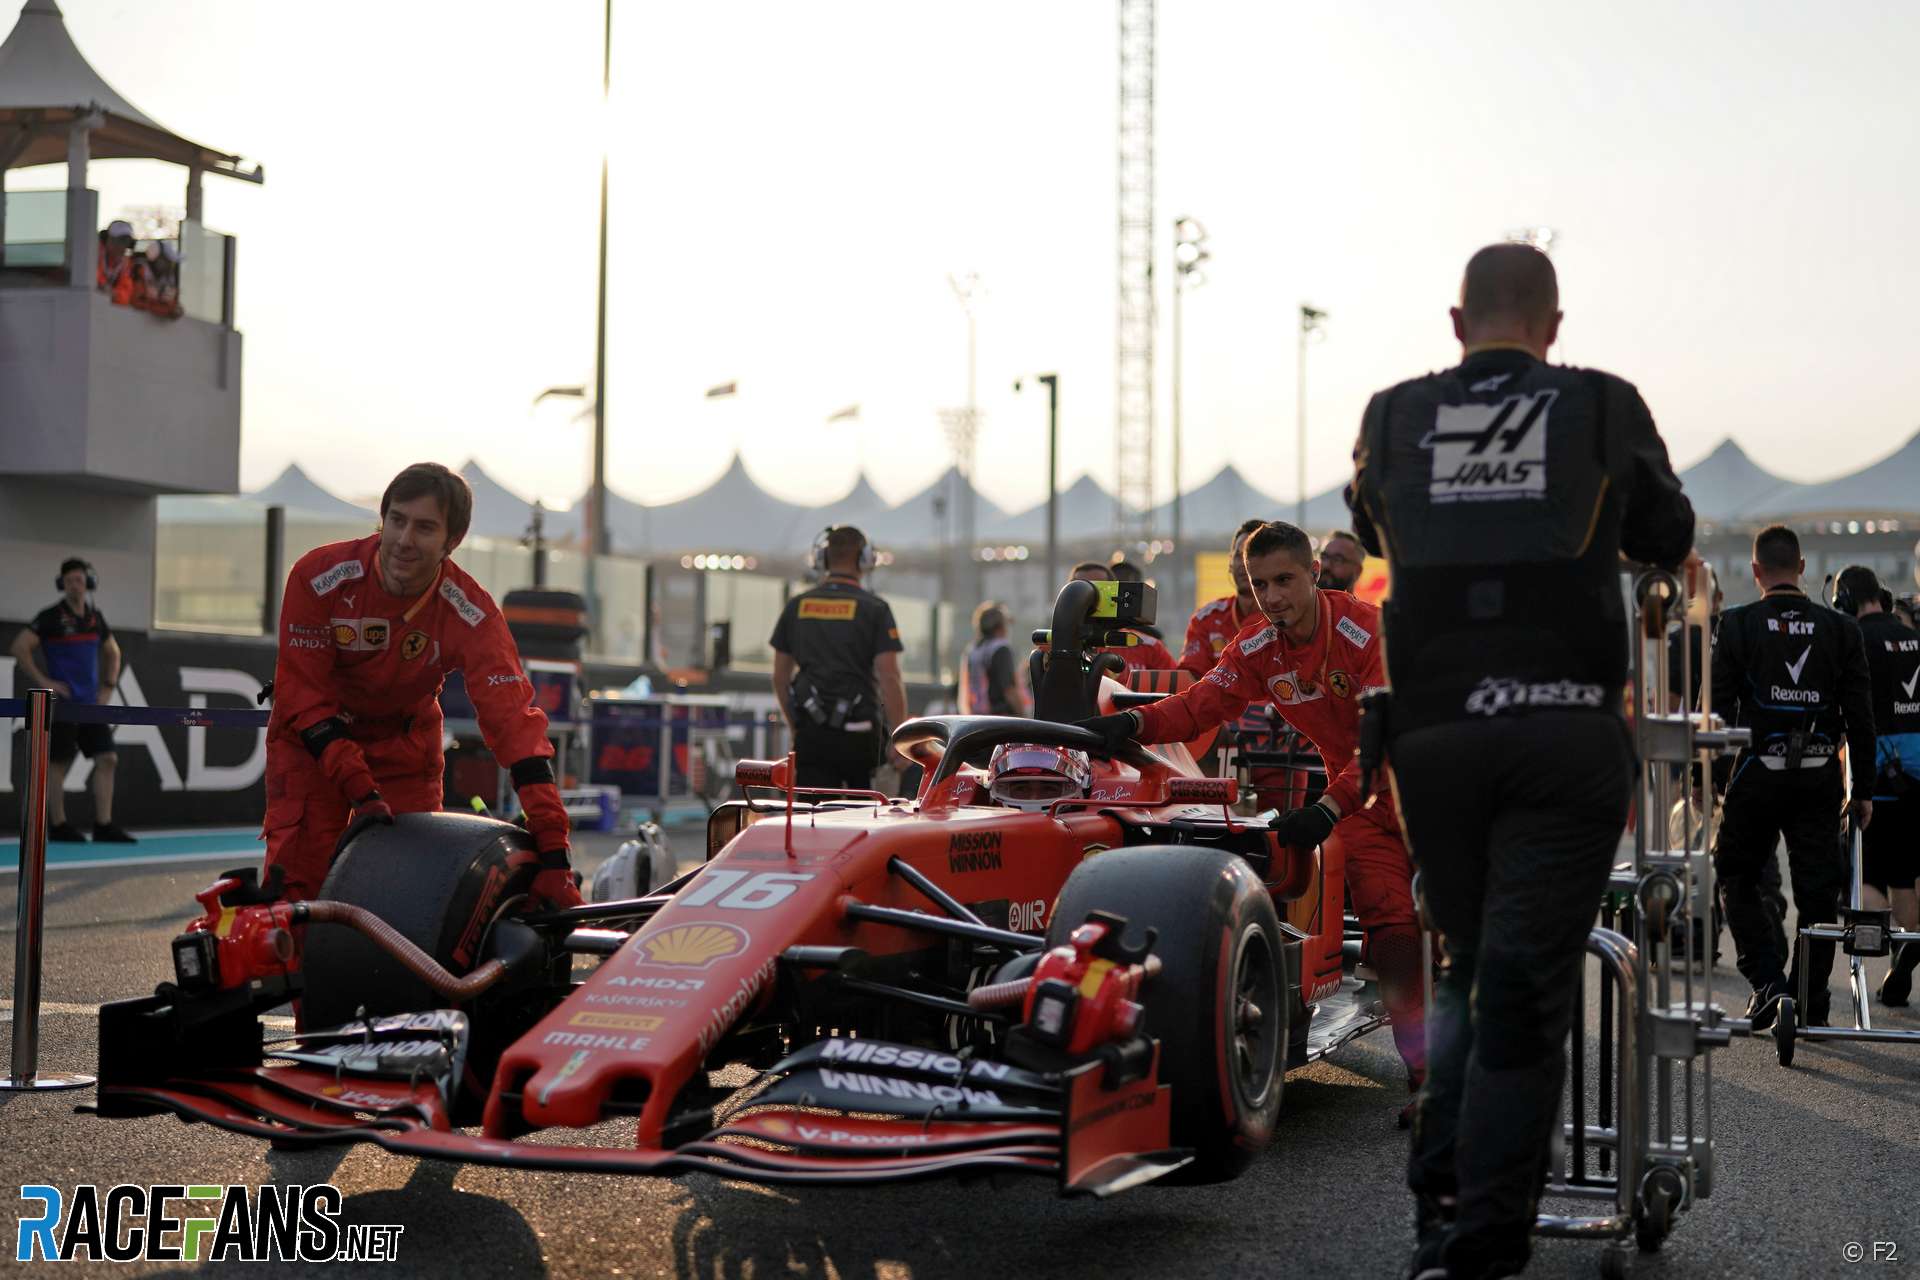 Charles Leclerc, Ferrari, Yas Marina, 2019